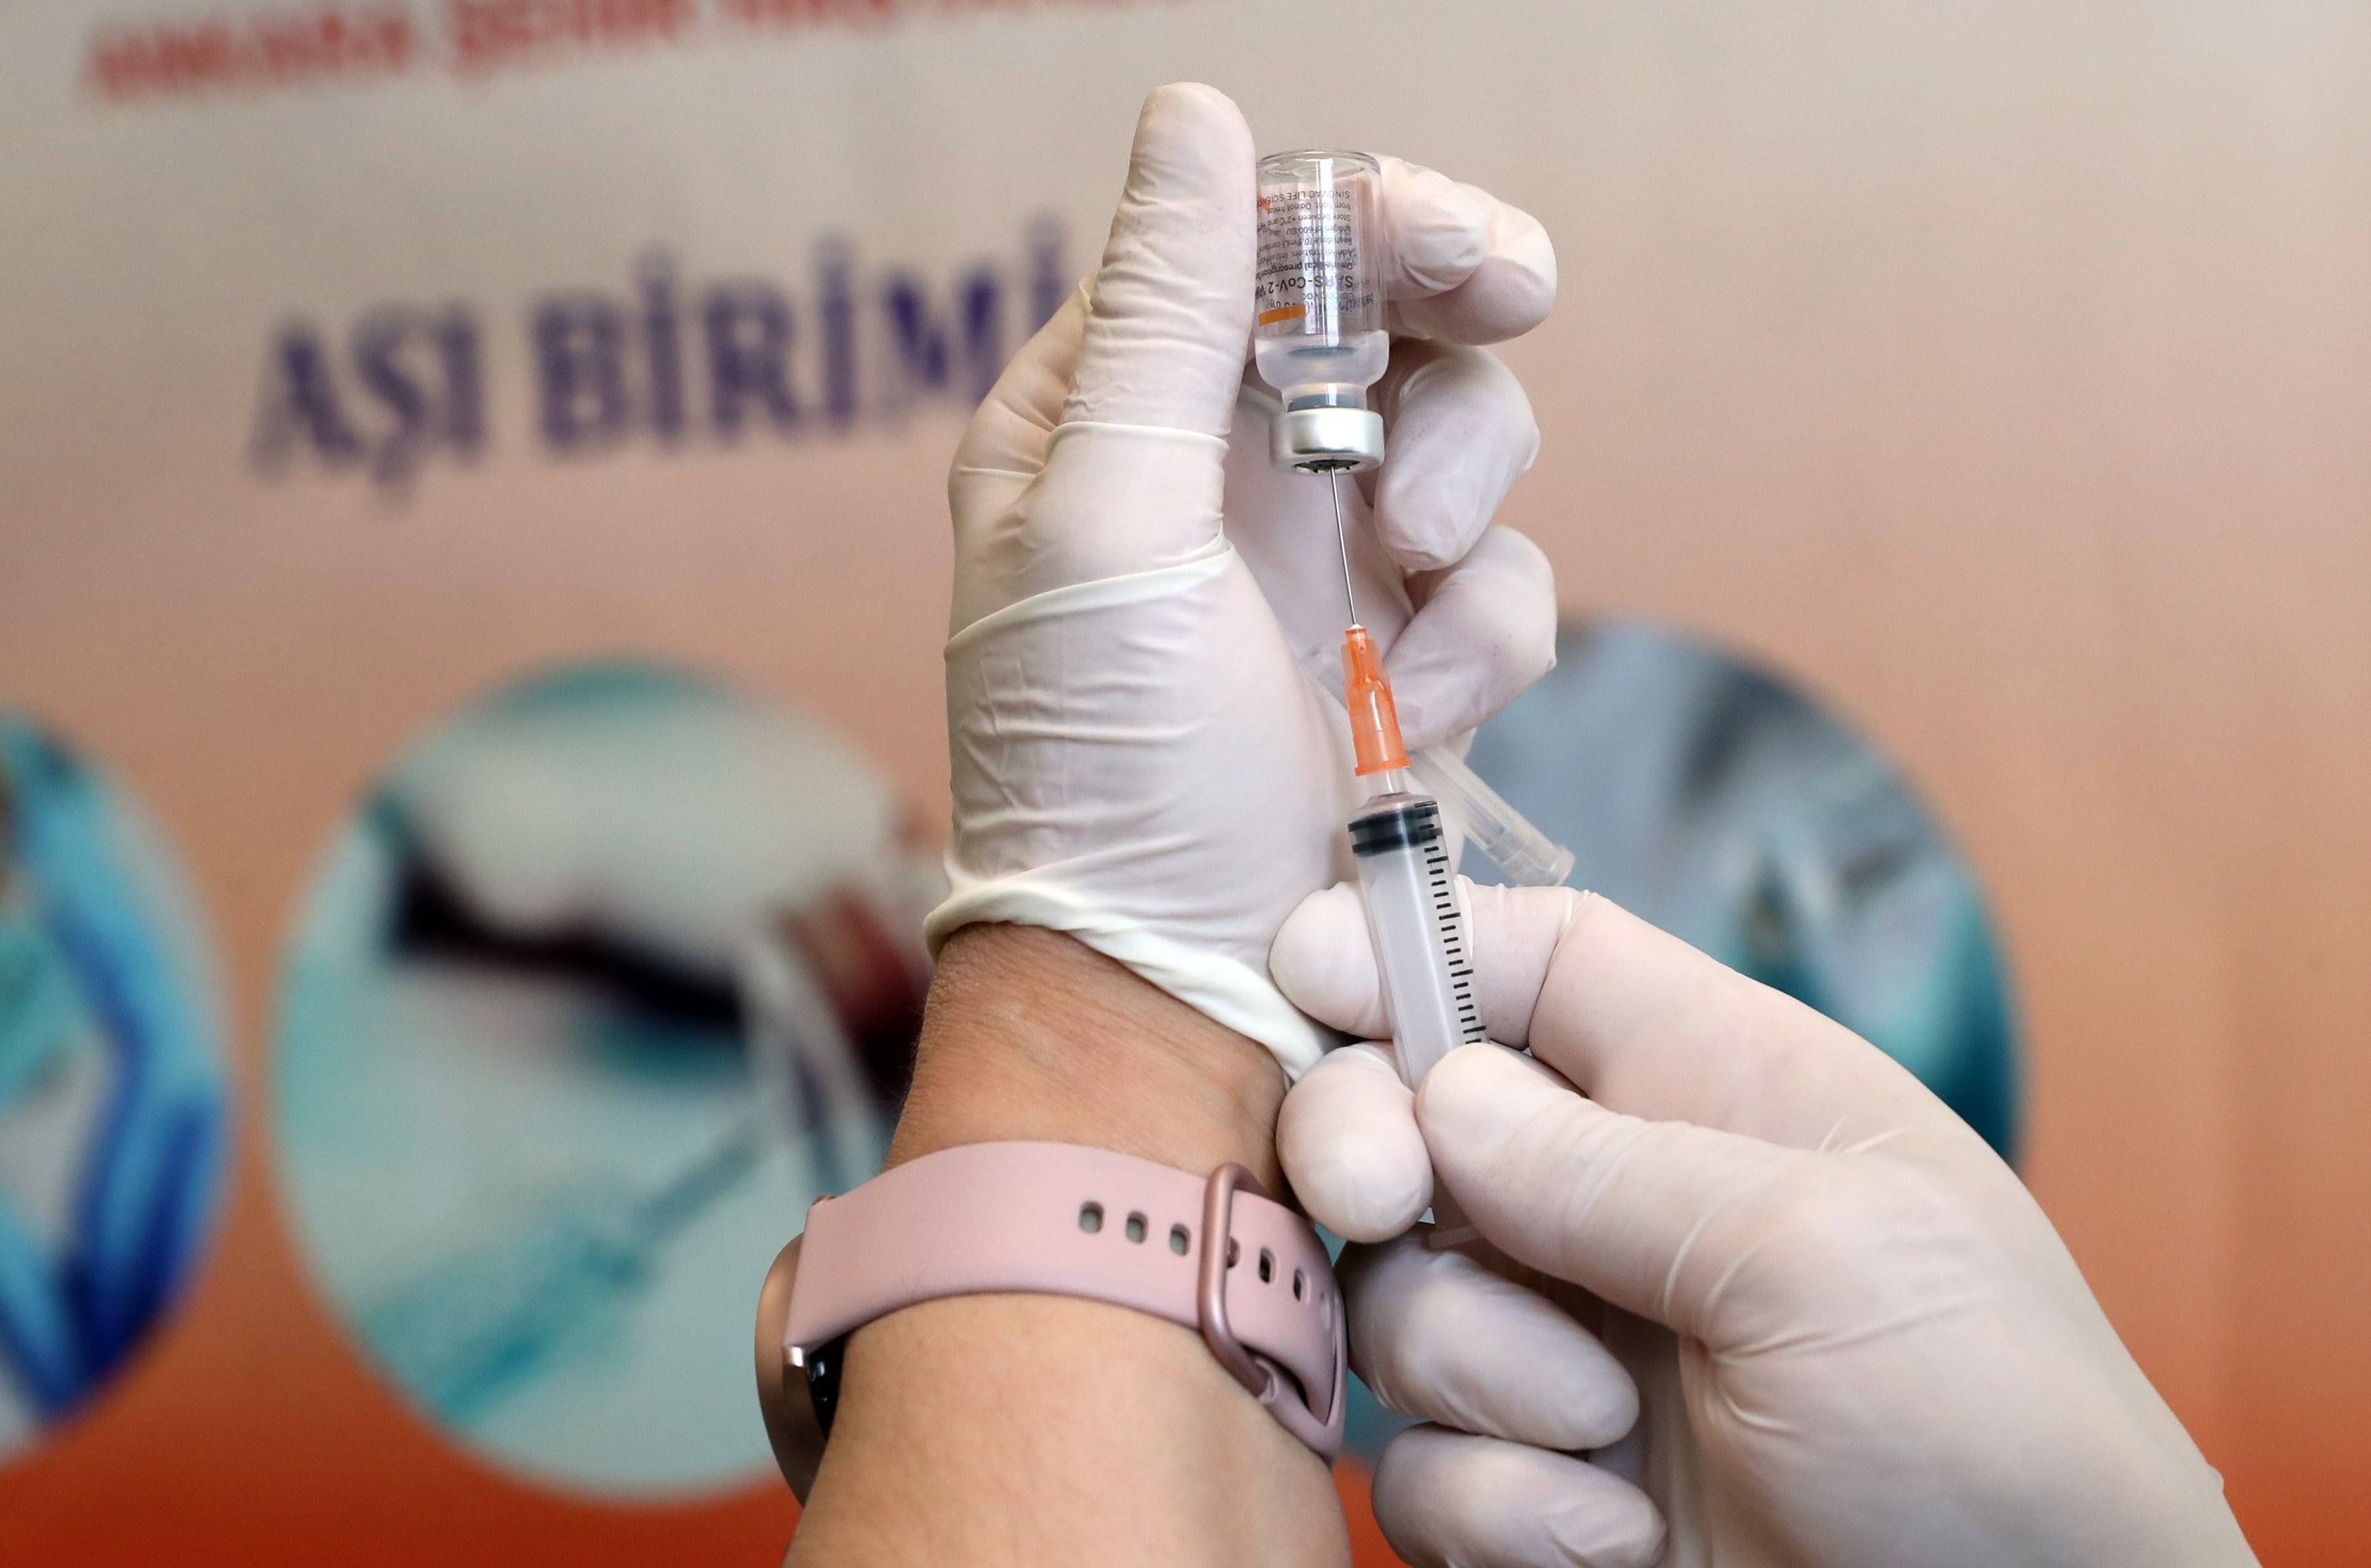 2. várka čínských vakcín COVID-19 dorazila do Turecka